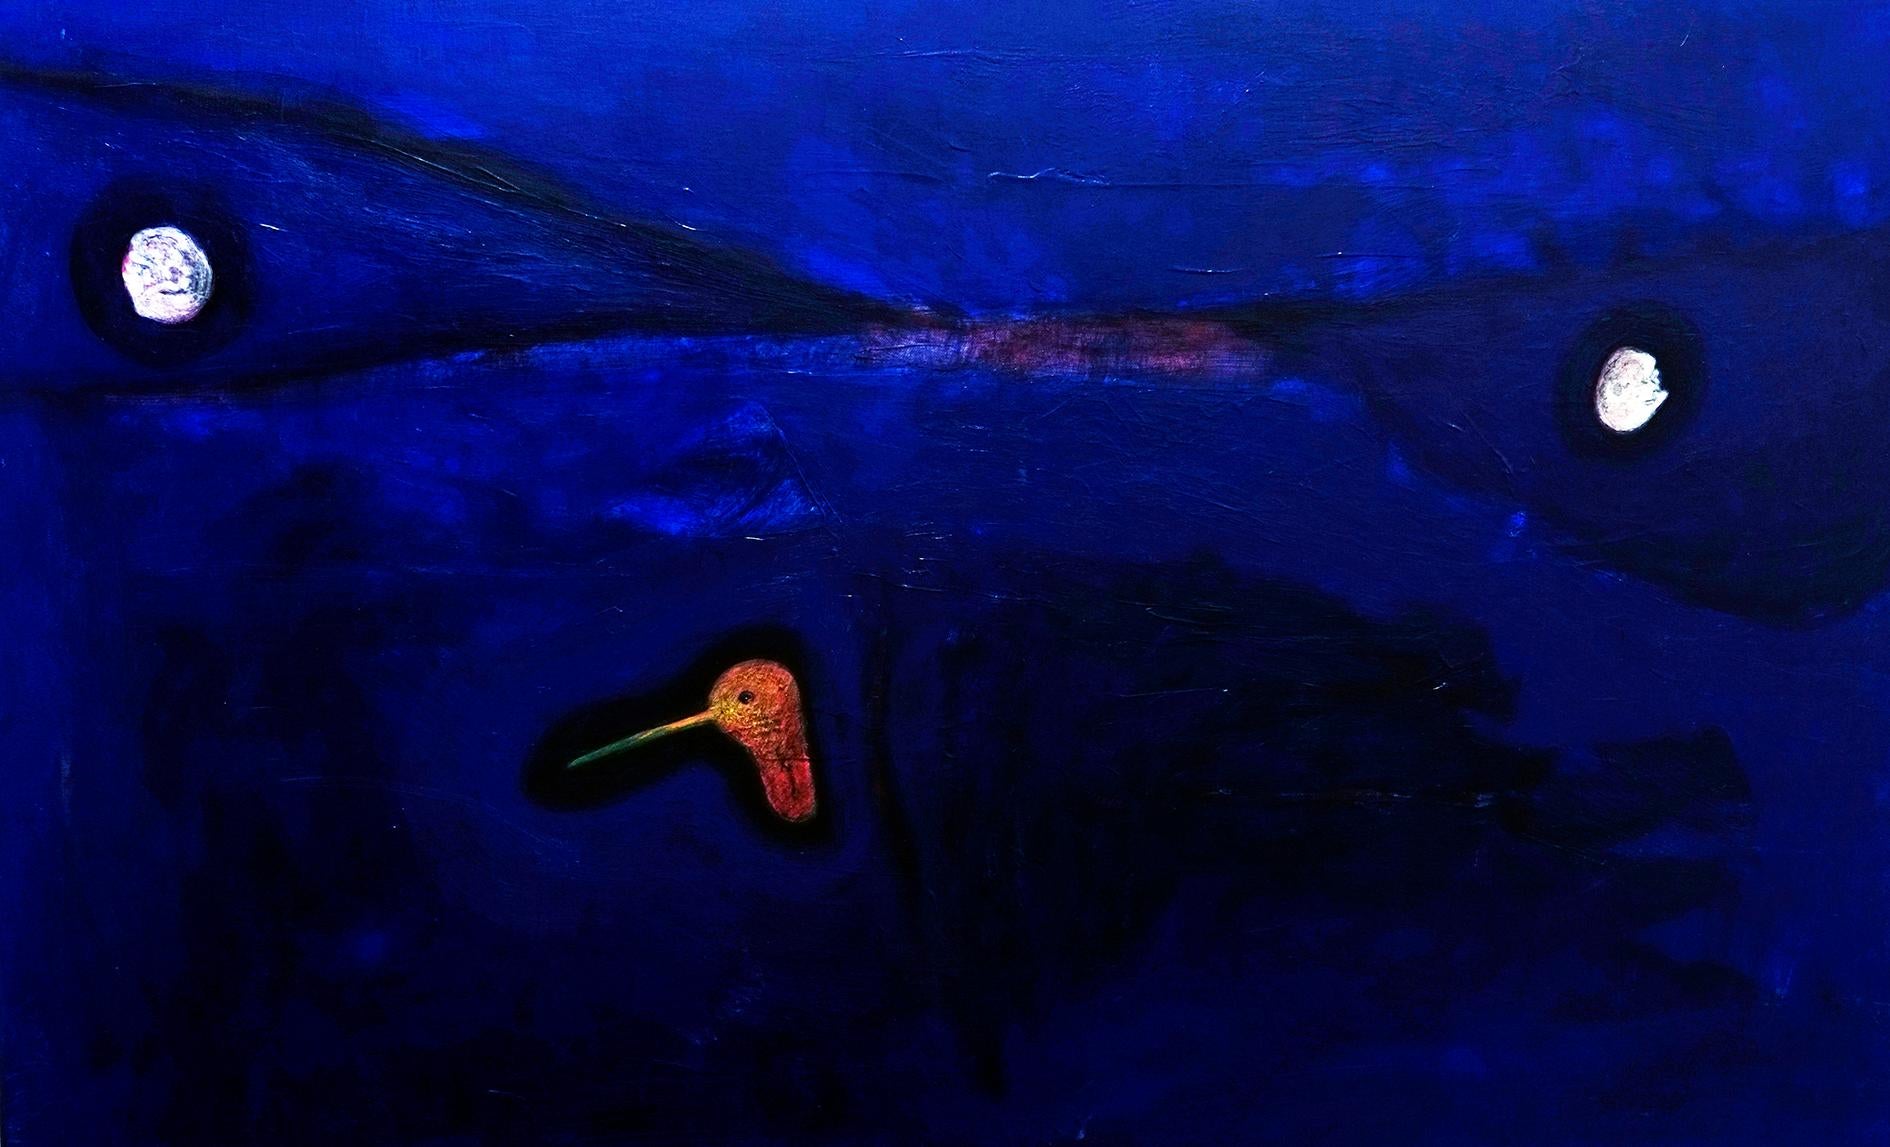 Ricardo Fuentealba-Fabio Abstract Painting - Cabeza de colibrí y dos cabezas en los jardines